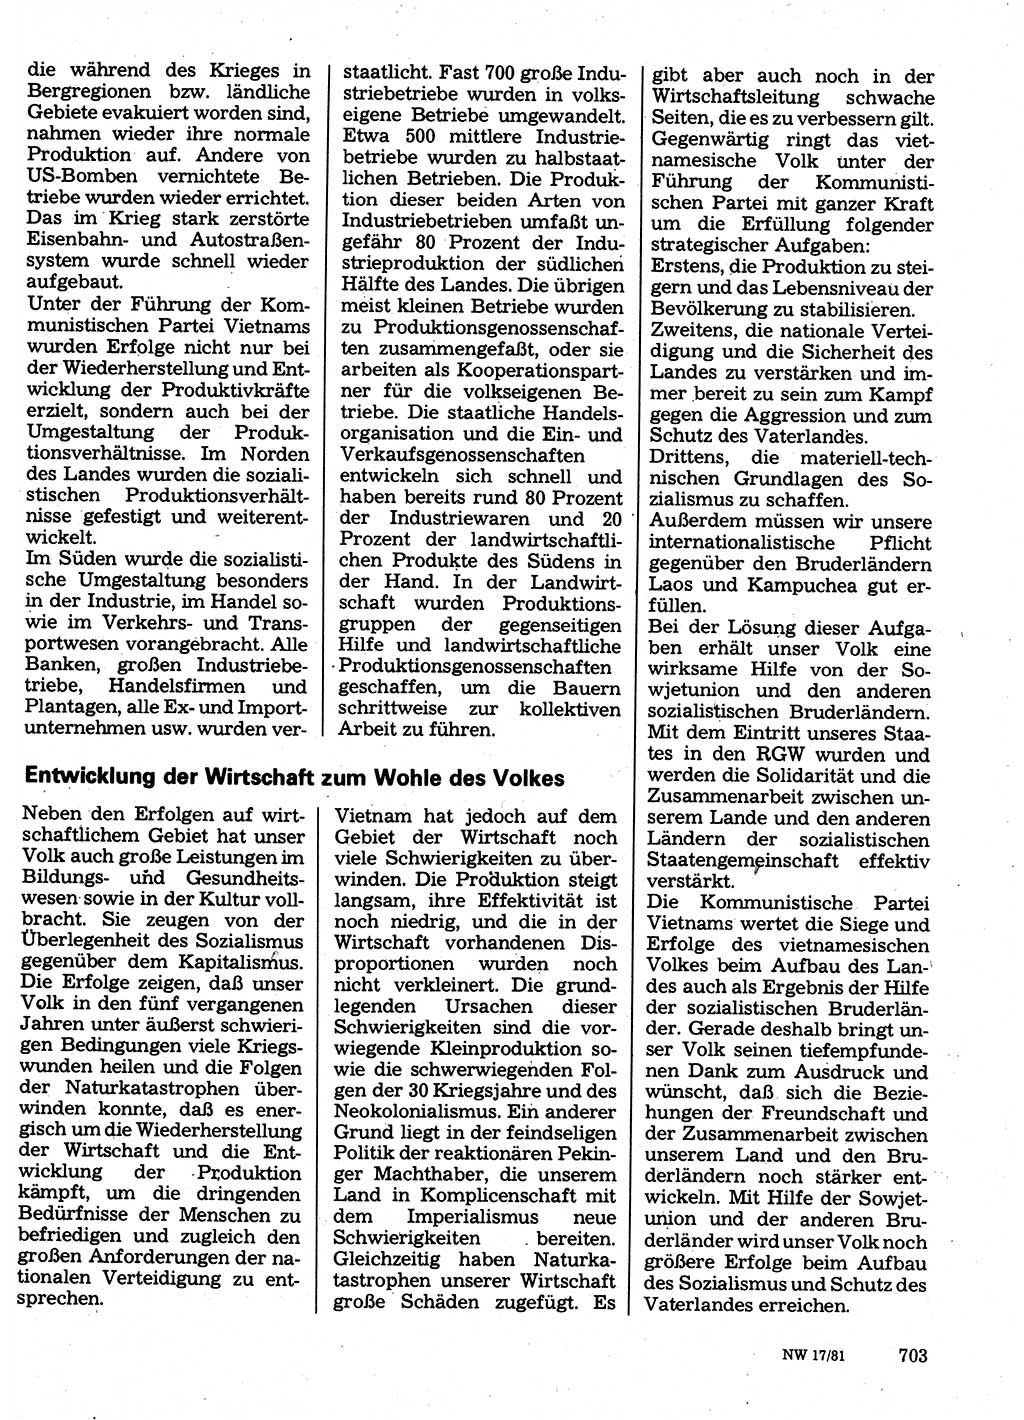 Neuer Weg (NW), Organ des Zentralkomitees (ZK) der SED (Sozialistische Einheitspartei Deutschlands) für Fragen des Parteilebens, 36. Jahrgang [Deutsche Demokratische Republik (DDR)] 1981, Seite 703 (NW ZK SED DDR 1981, S. 703)